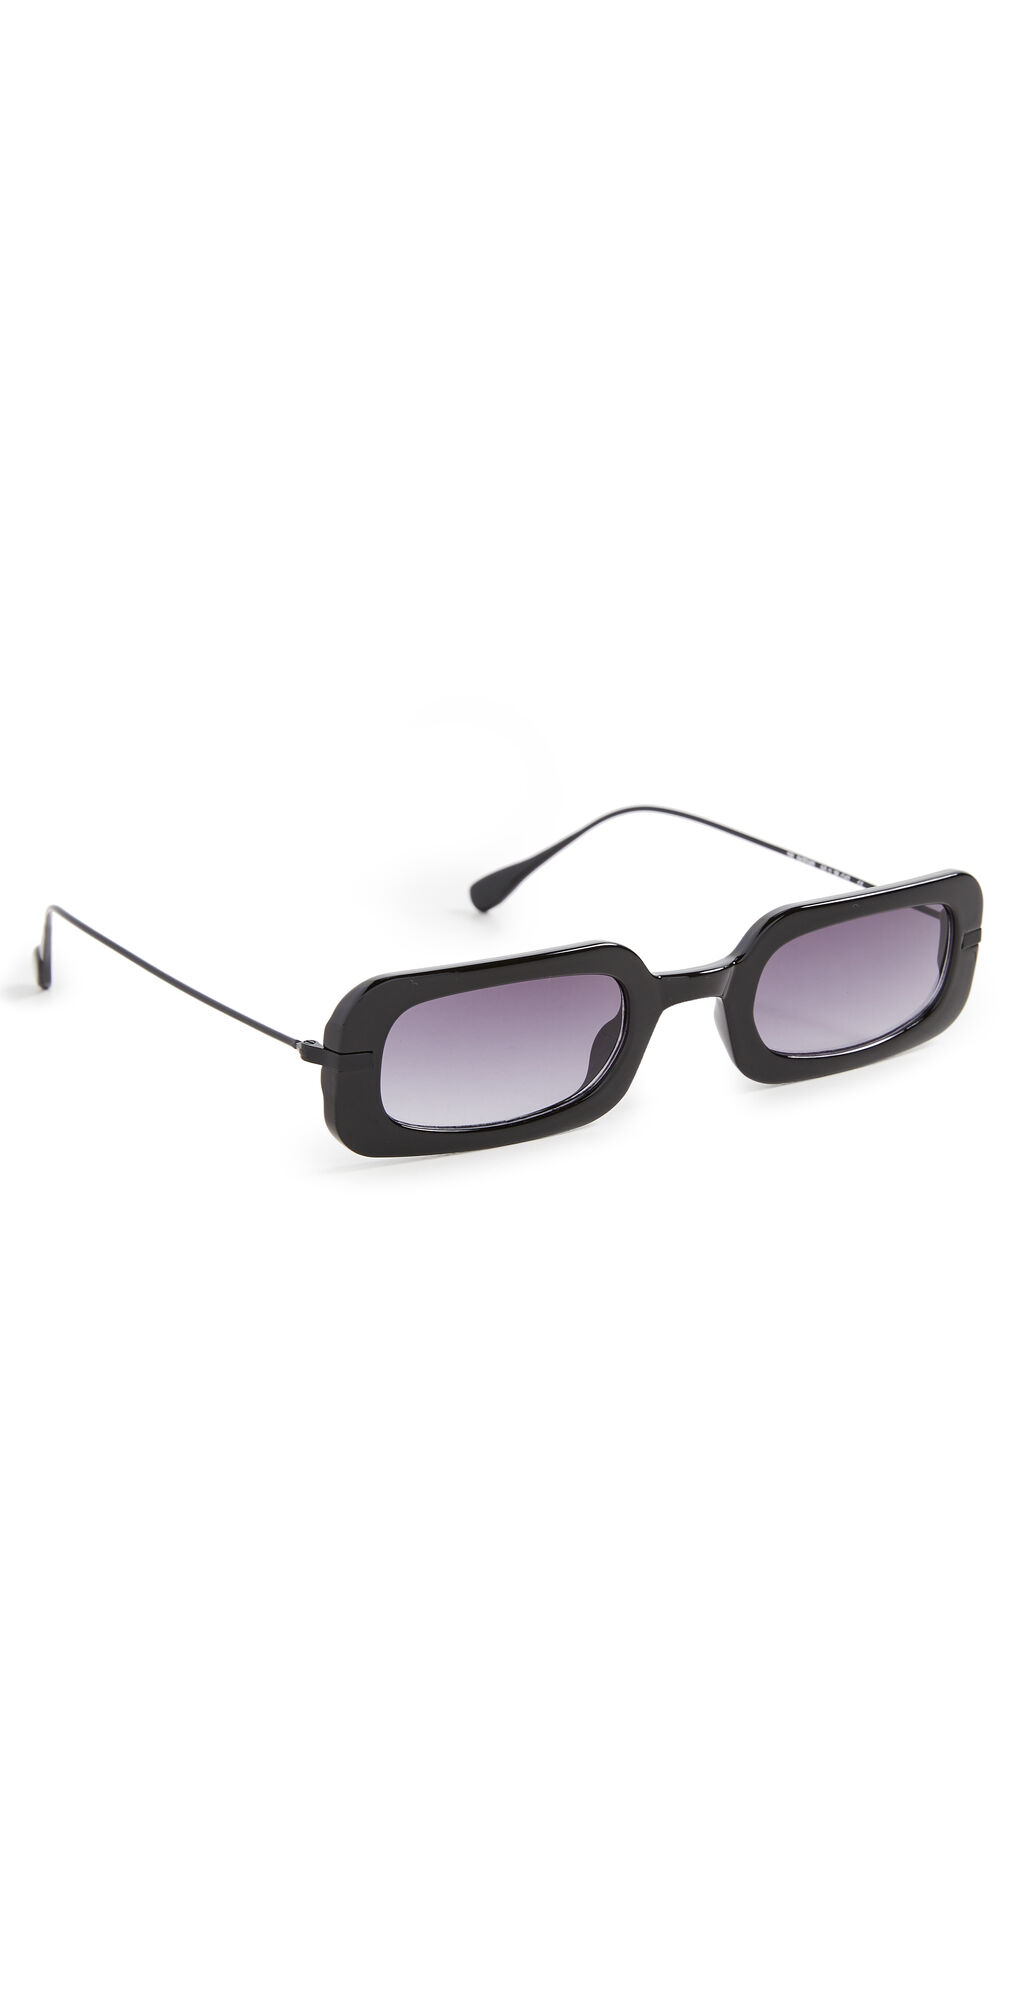 WeWoreWhat The Backyard Sunglasses Black Smoke One Size  Black Smoke  size:One Size